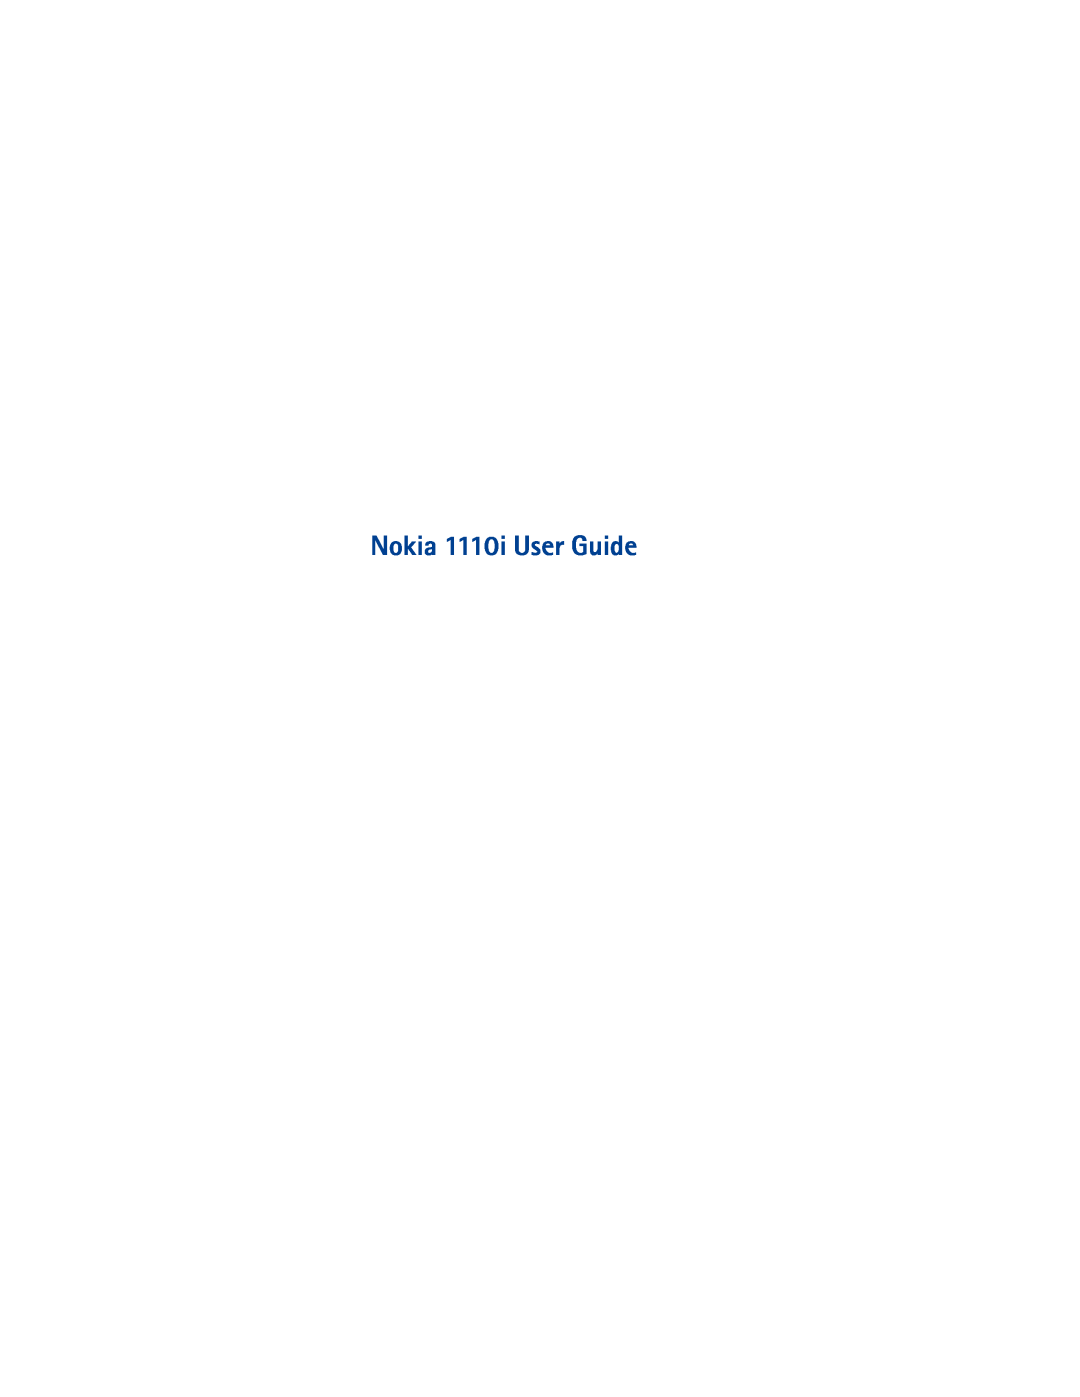 Nokia 1110I manual Nokia 1110i User Guide 